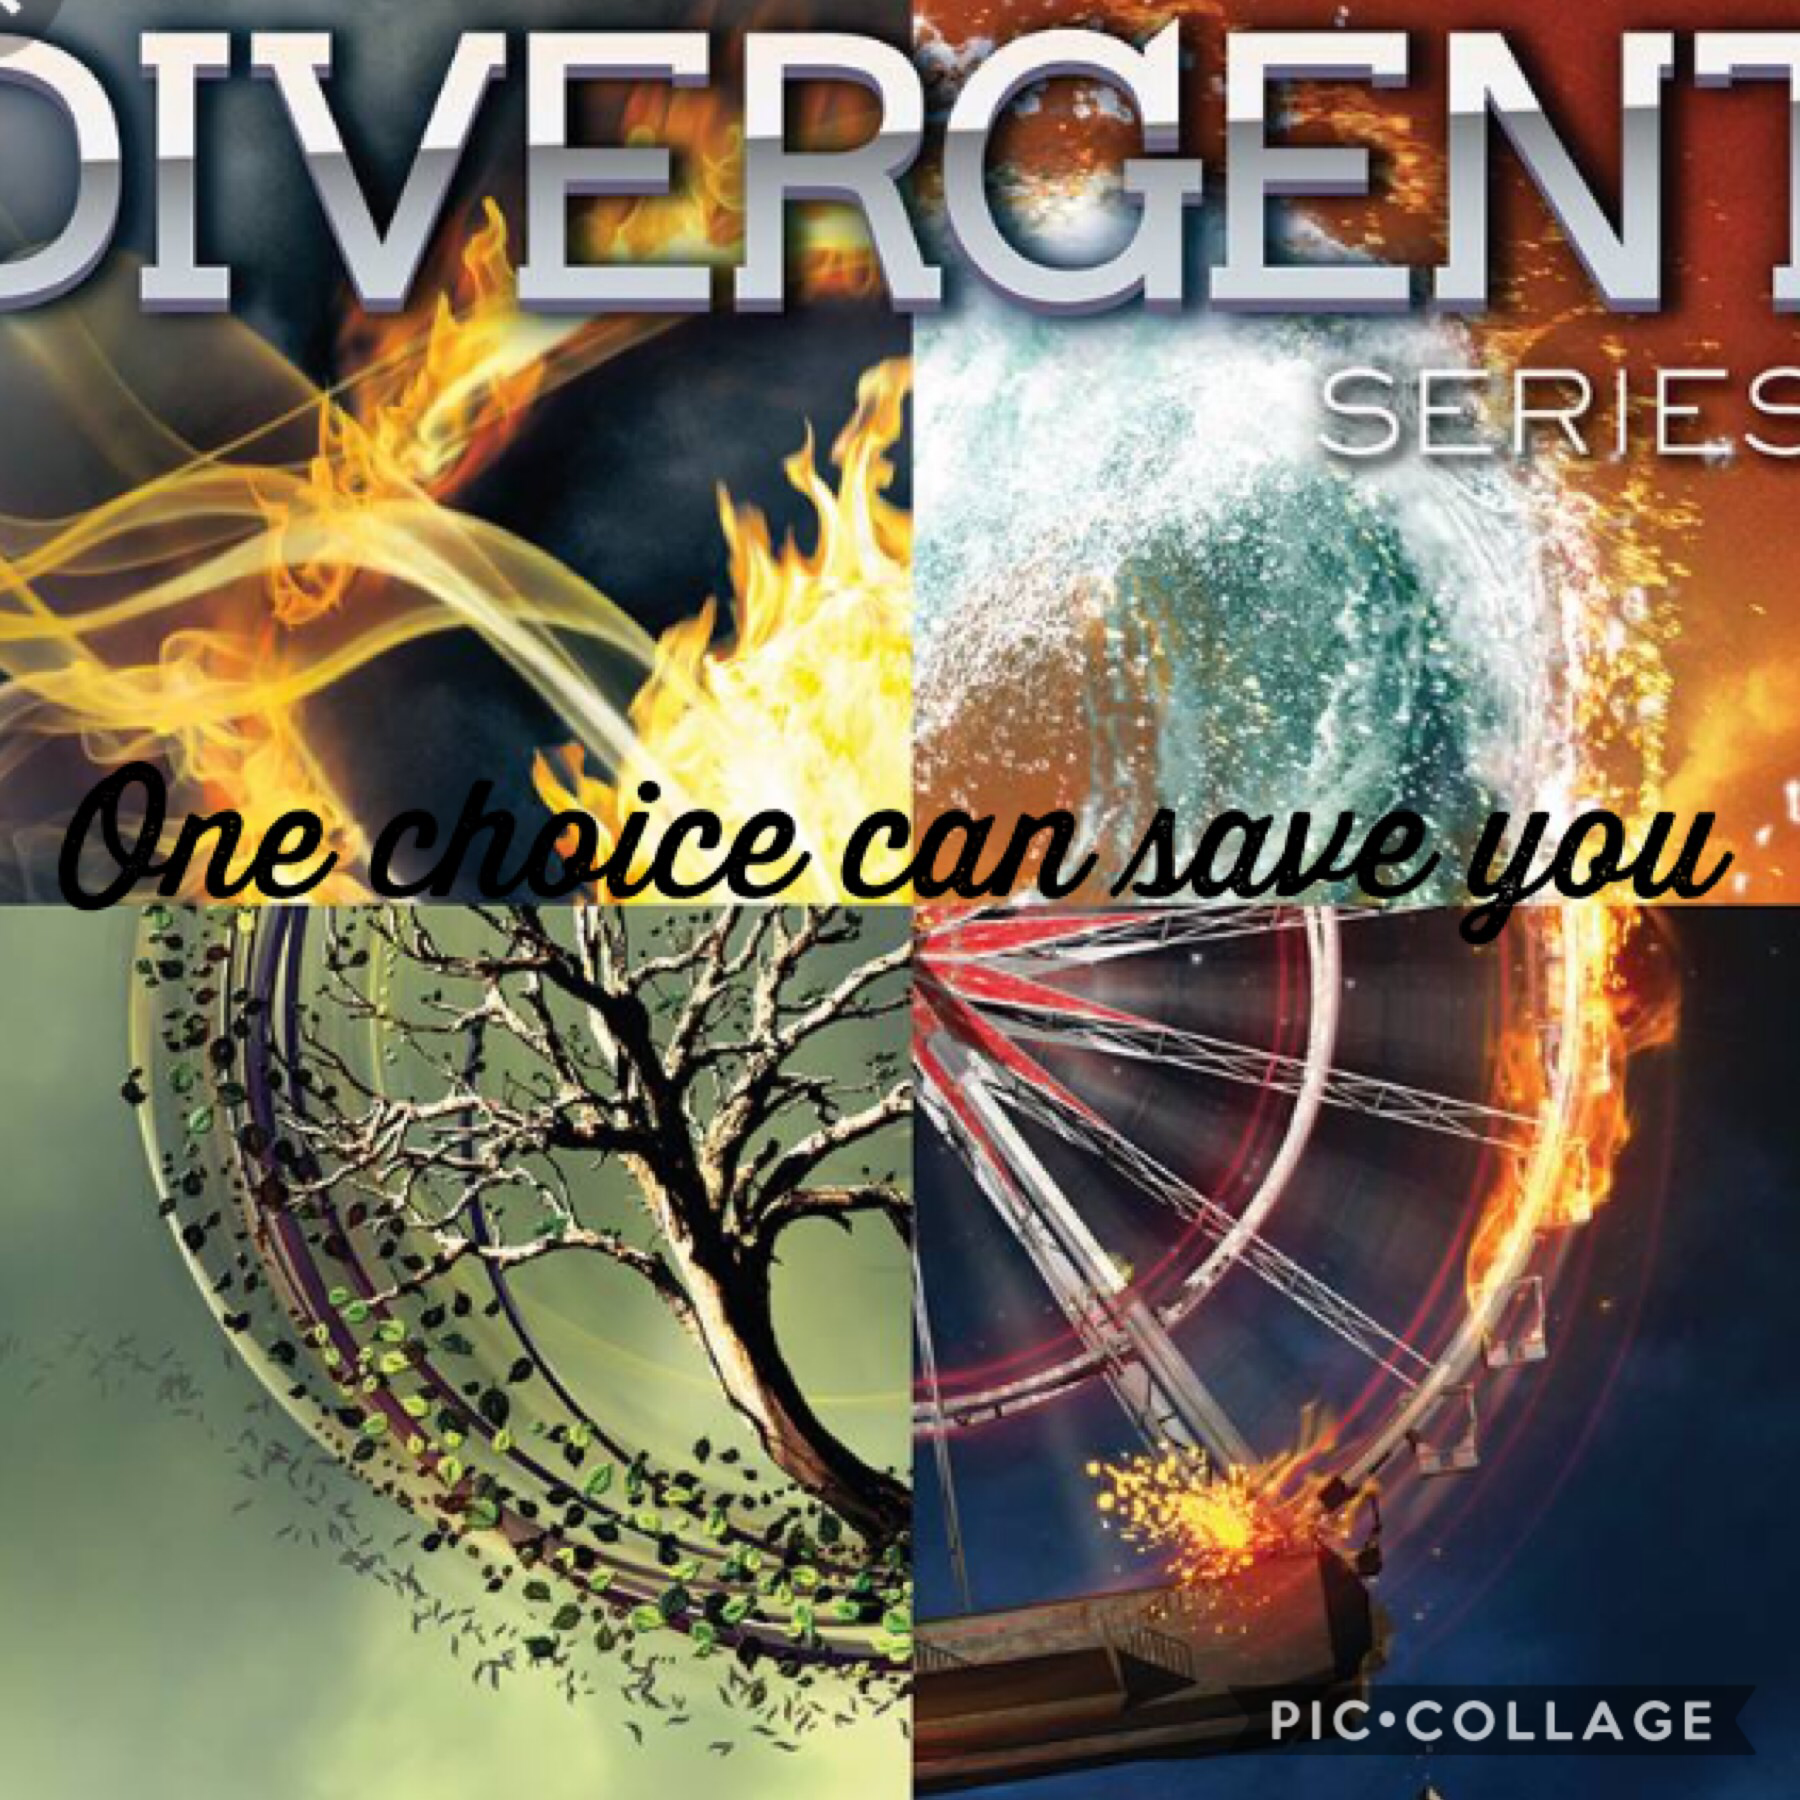 Divergent! I love this movie